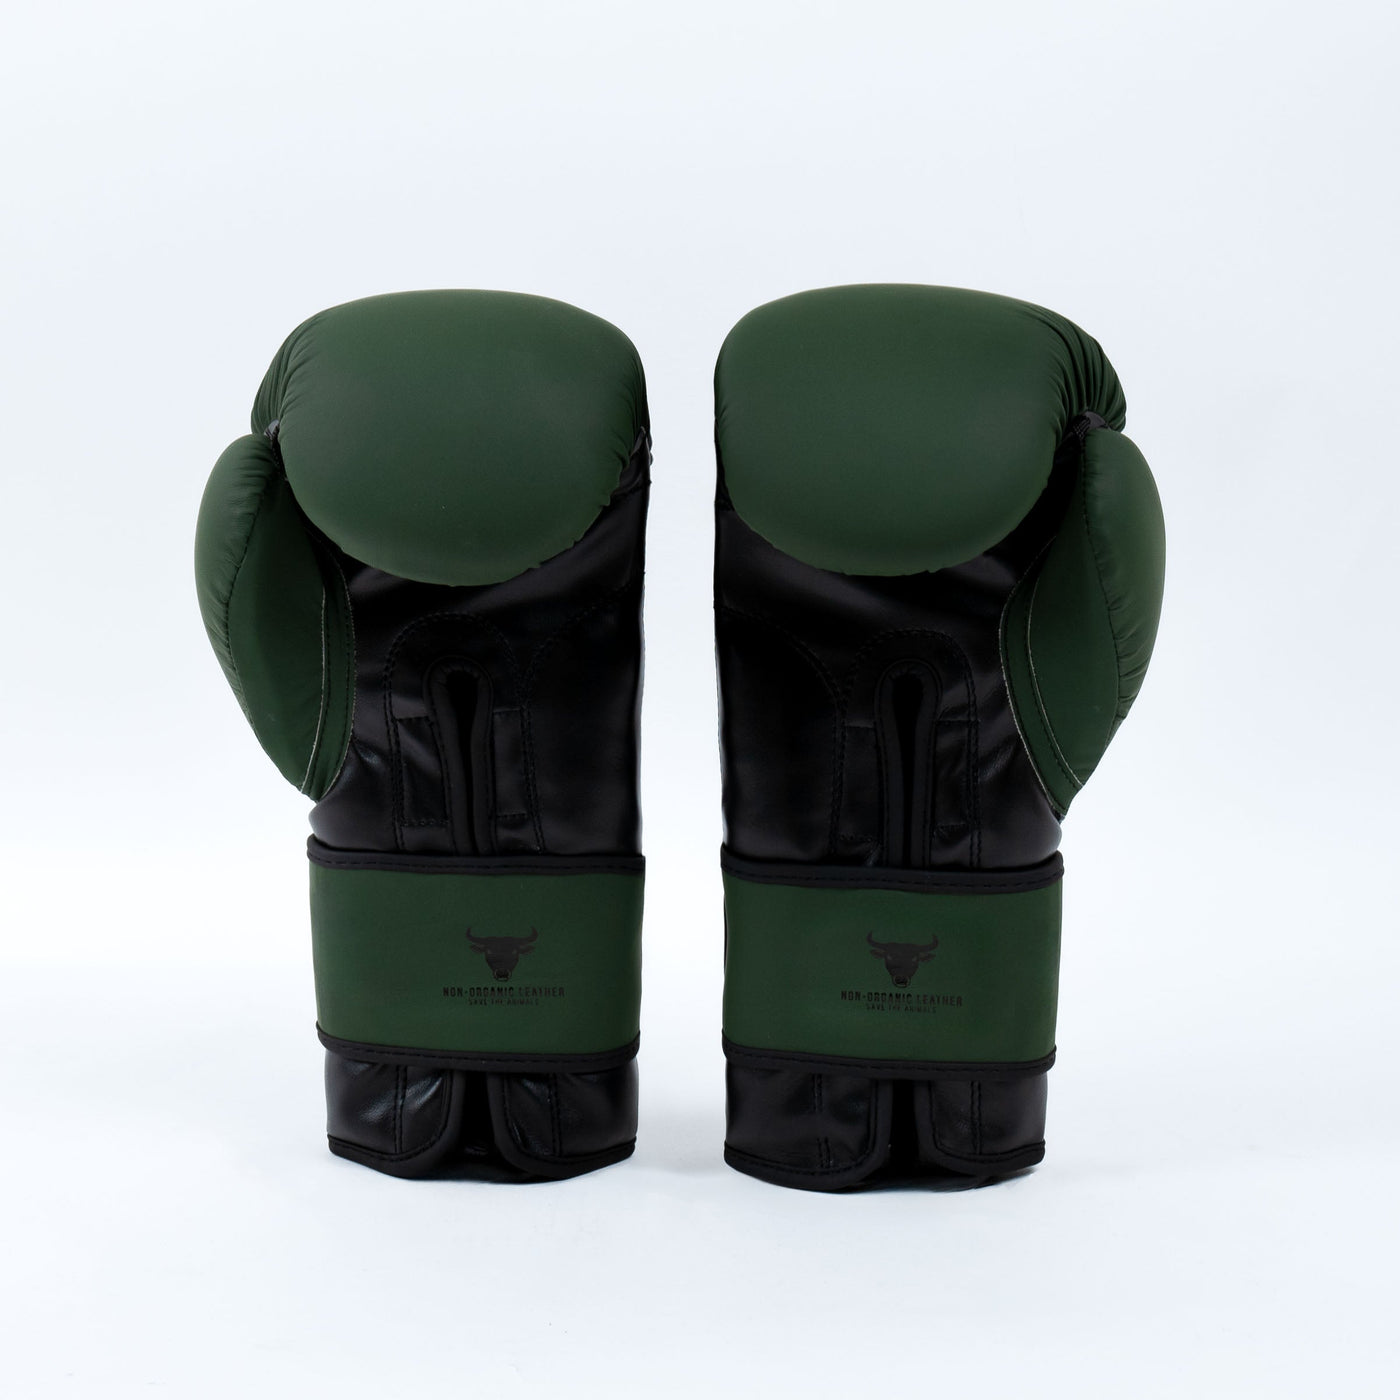 Mănuși Box Knockout Starter | knock-out.ro